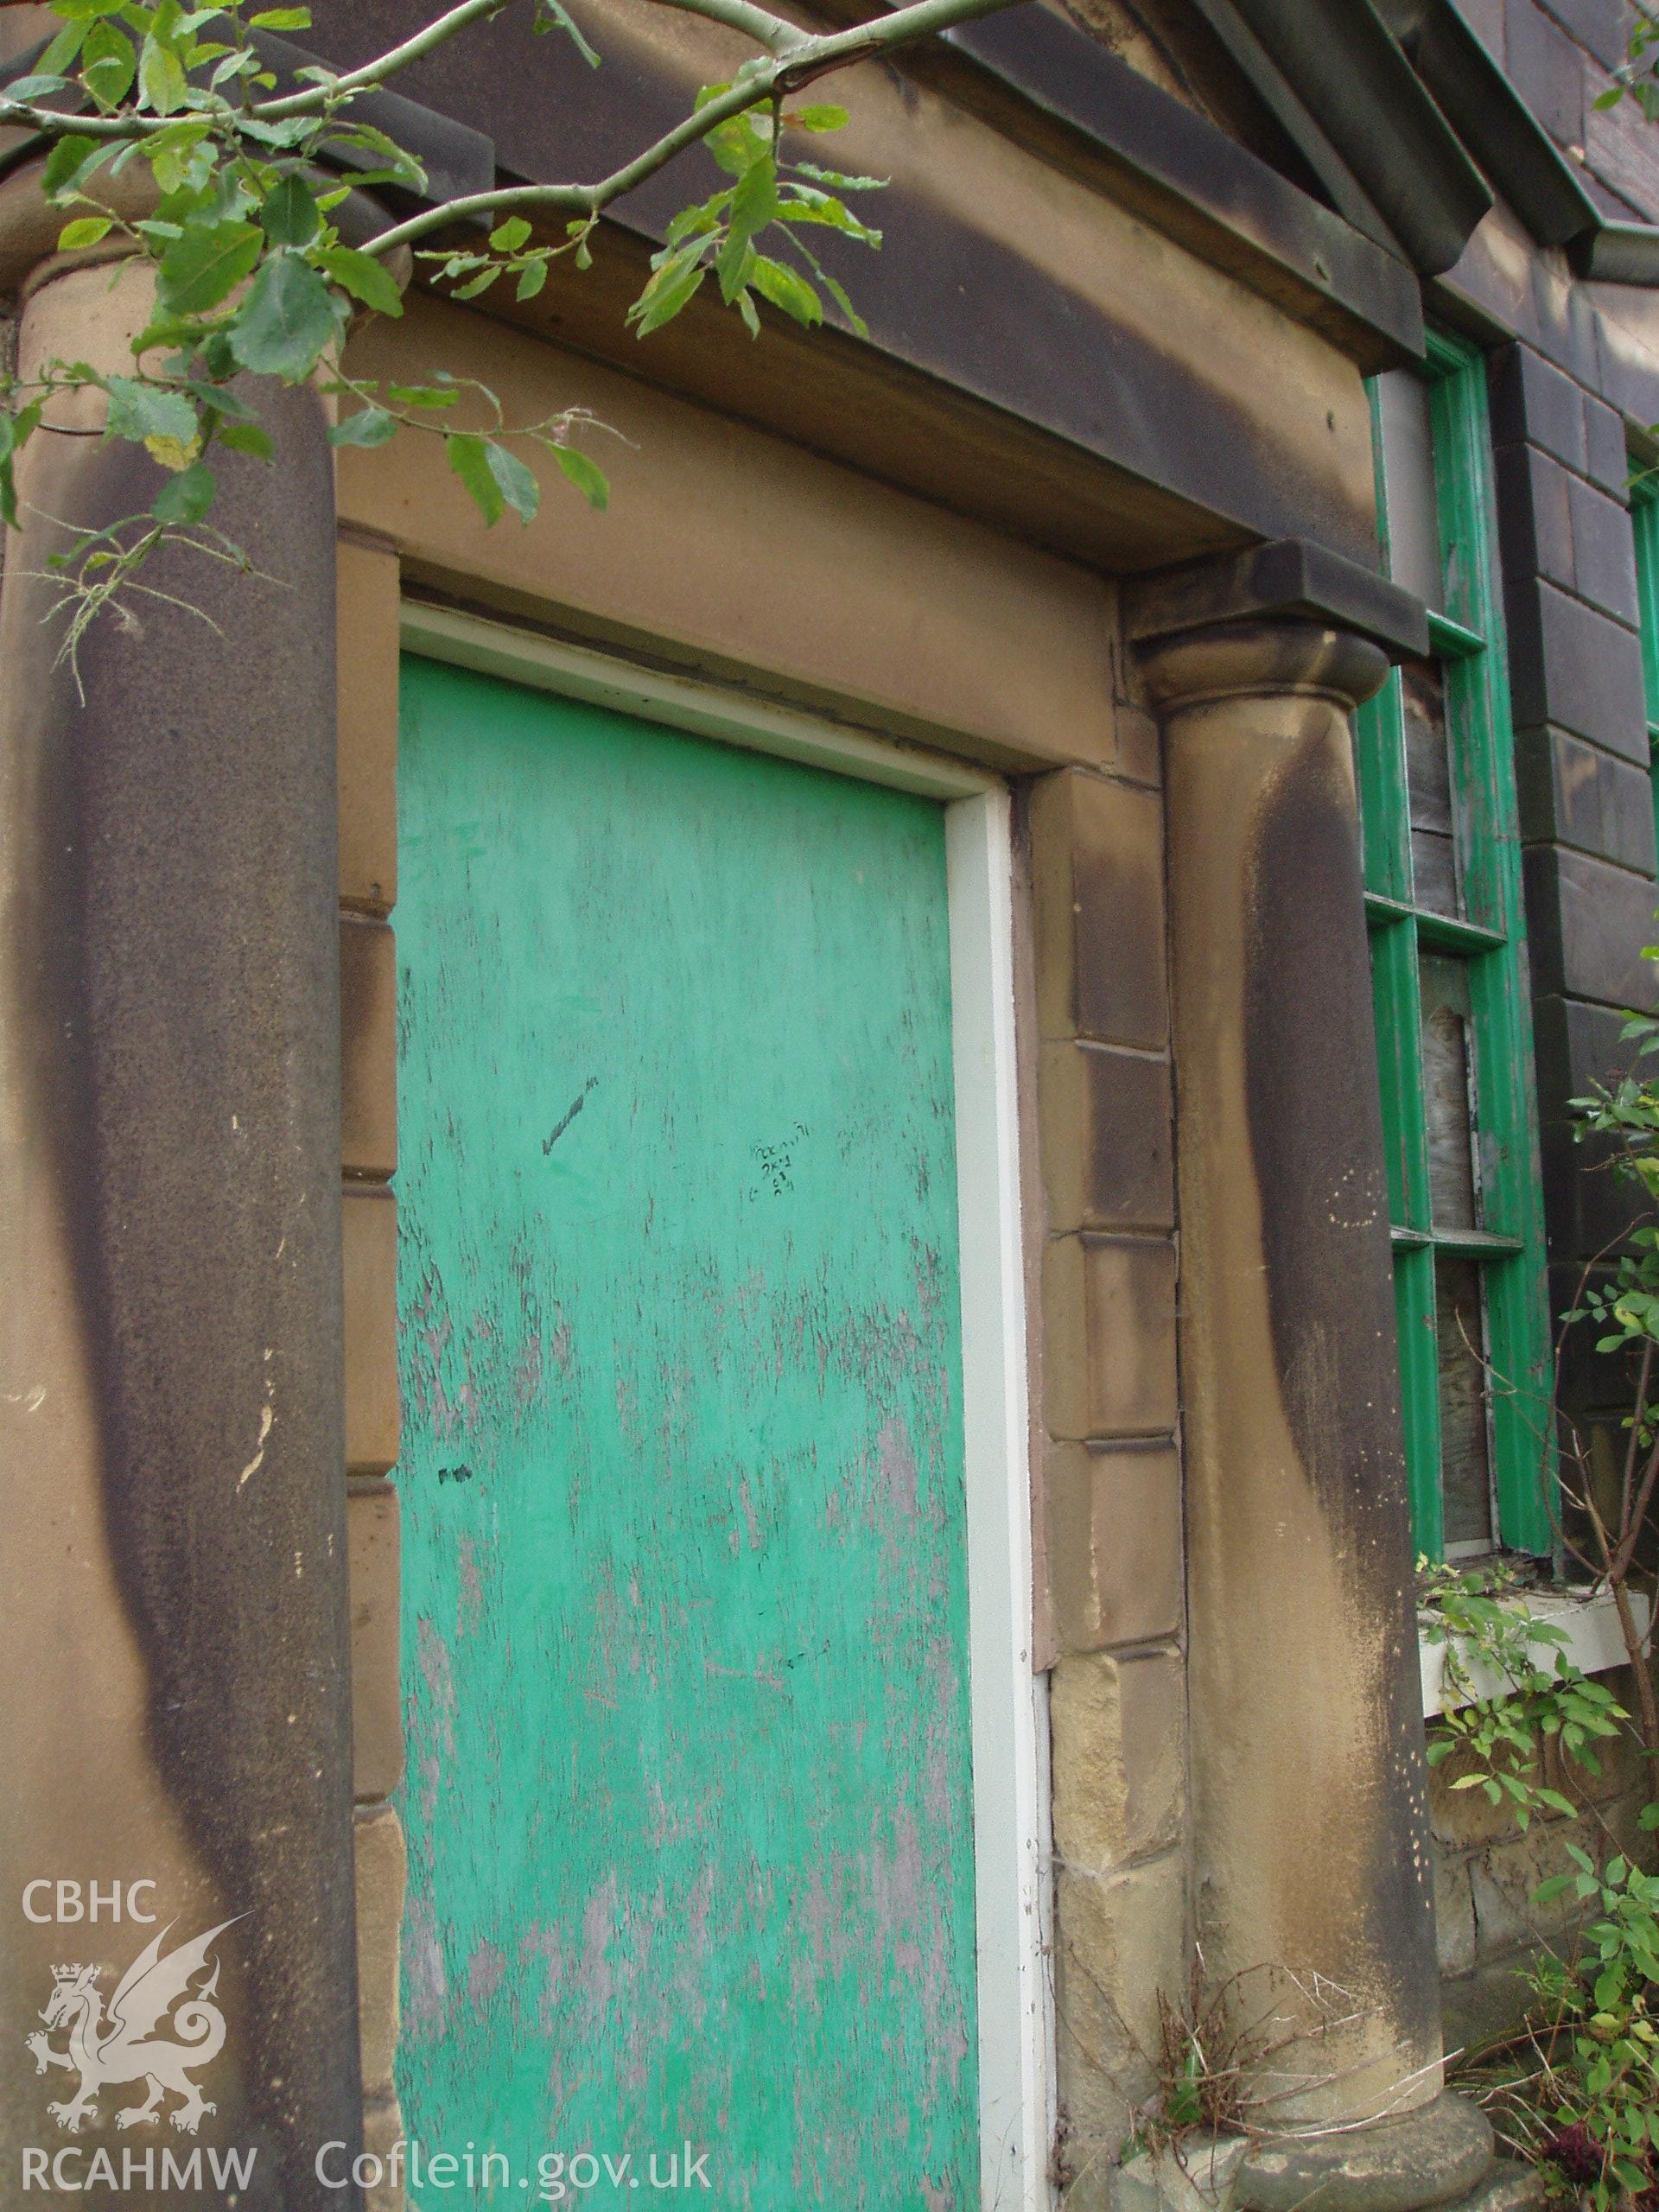 Bryn Seion Chapel, digital colour photograph showing exterior, entrance detail.